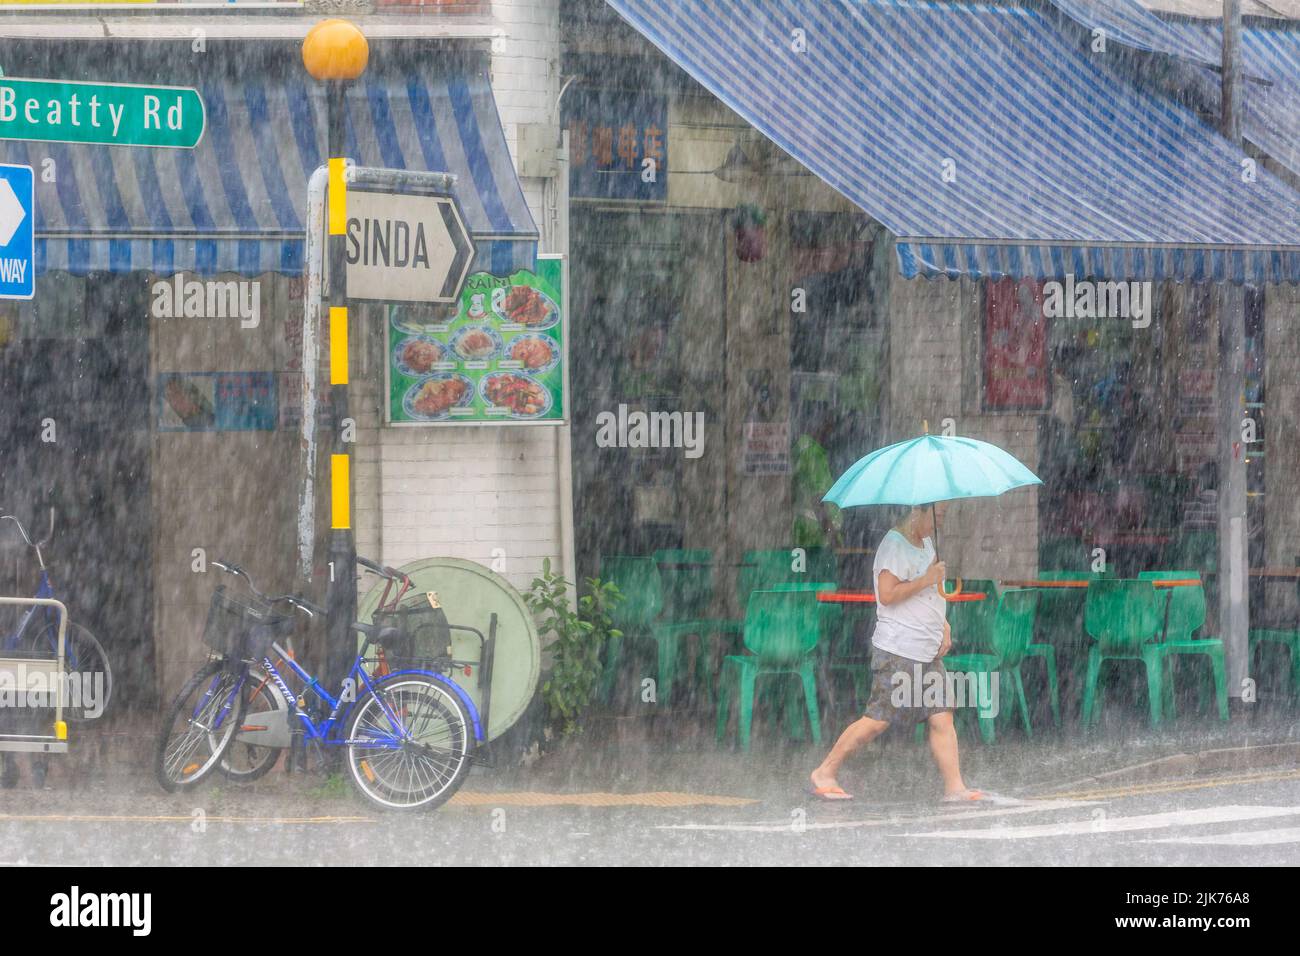 Angolo di Serangoon Road e Beatty Road durante il downpour tropicale, Repubblica di Singapore Foto Stock